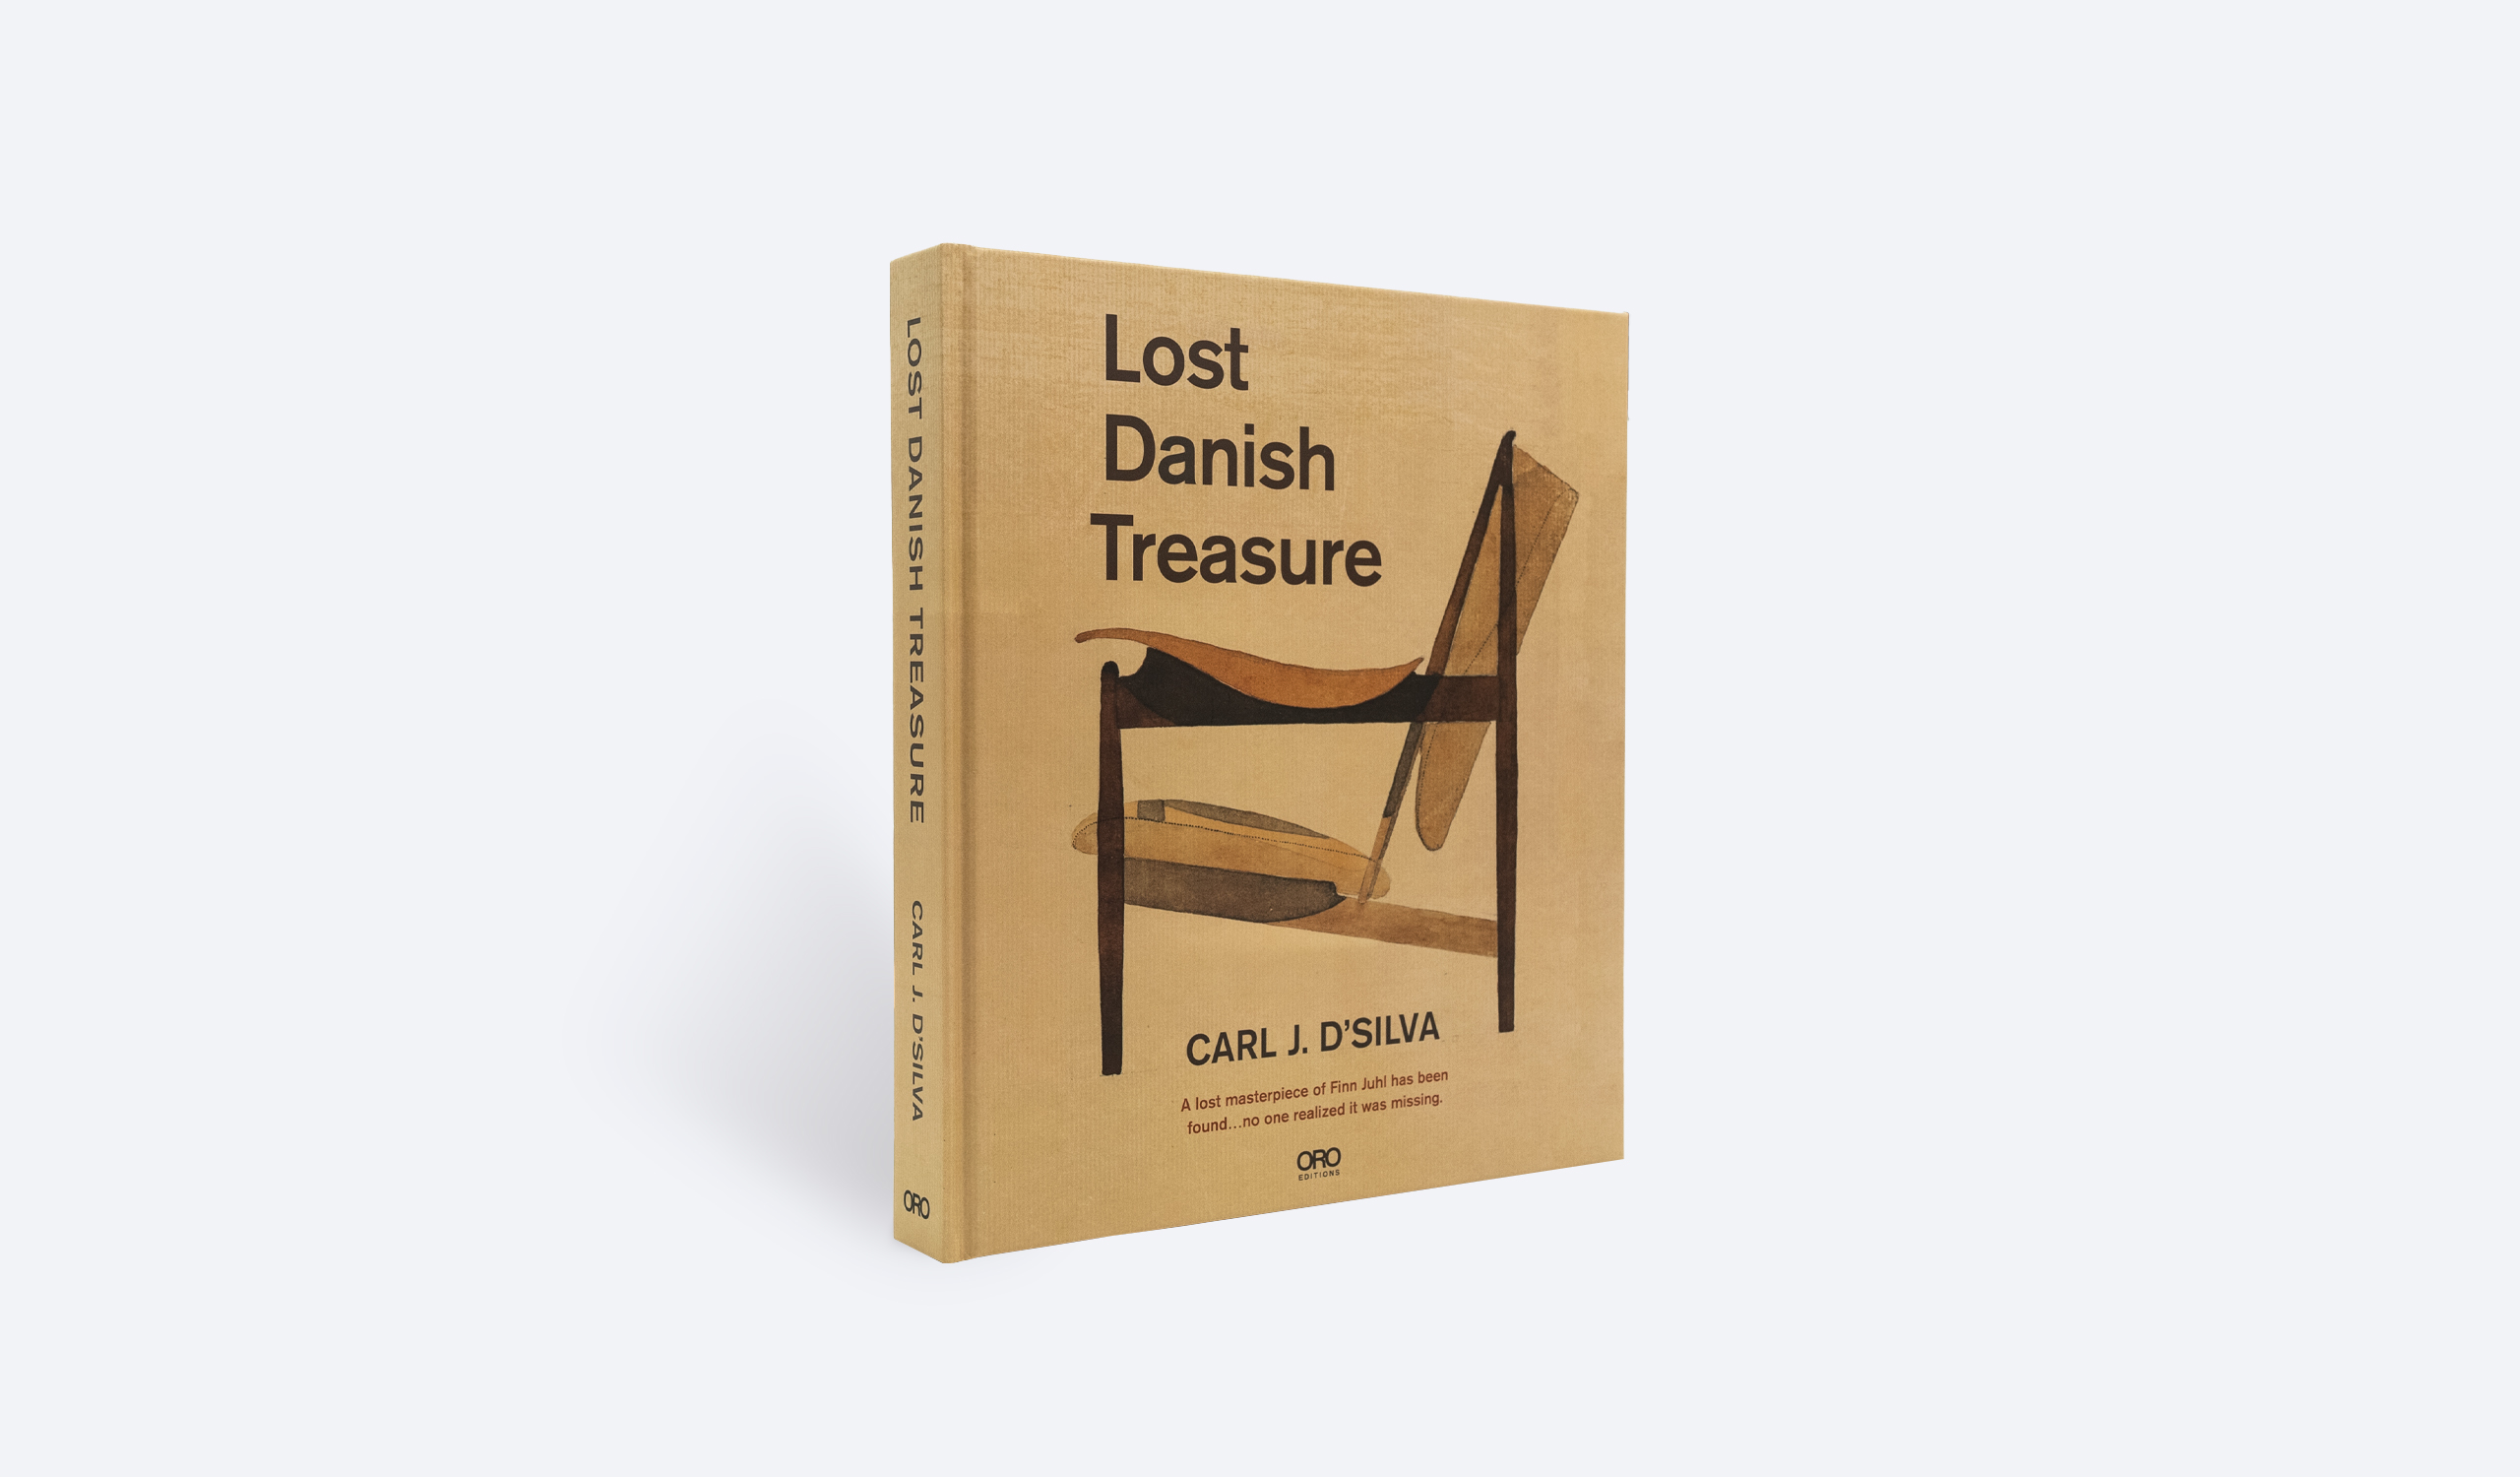 Lost Danish Treasure